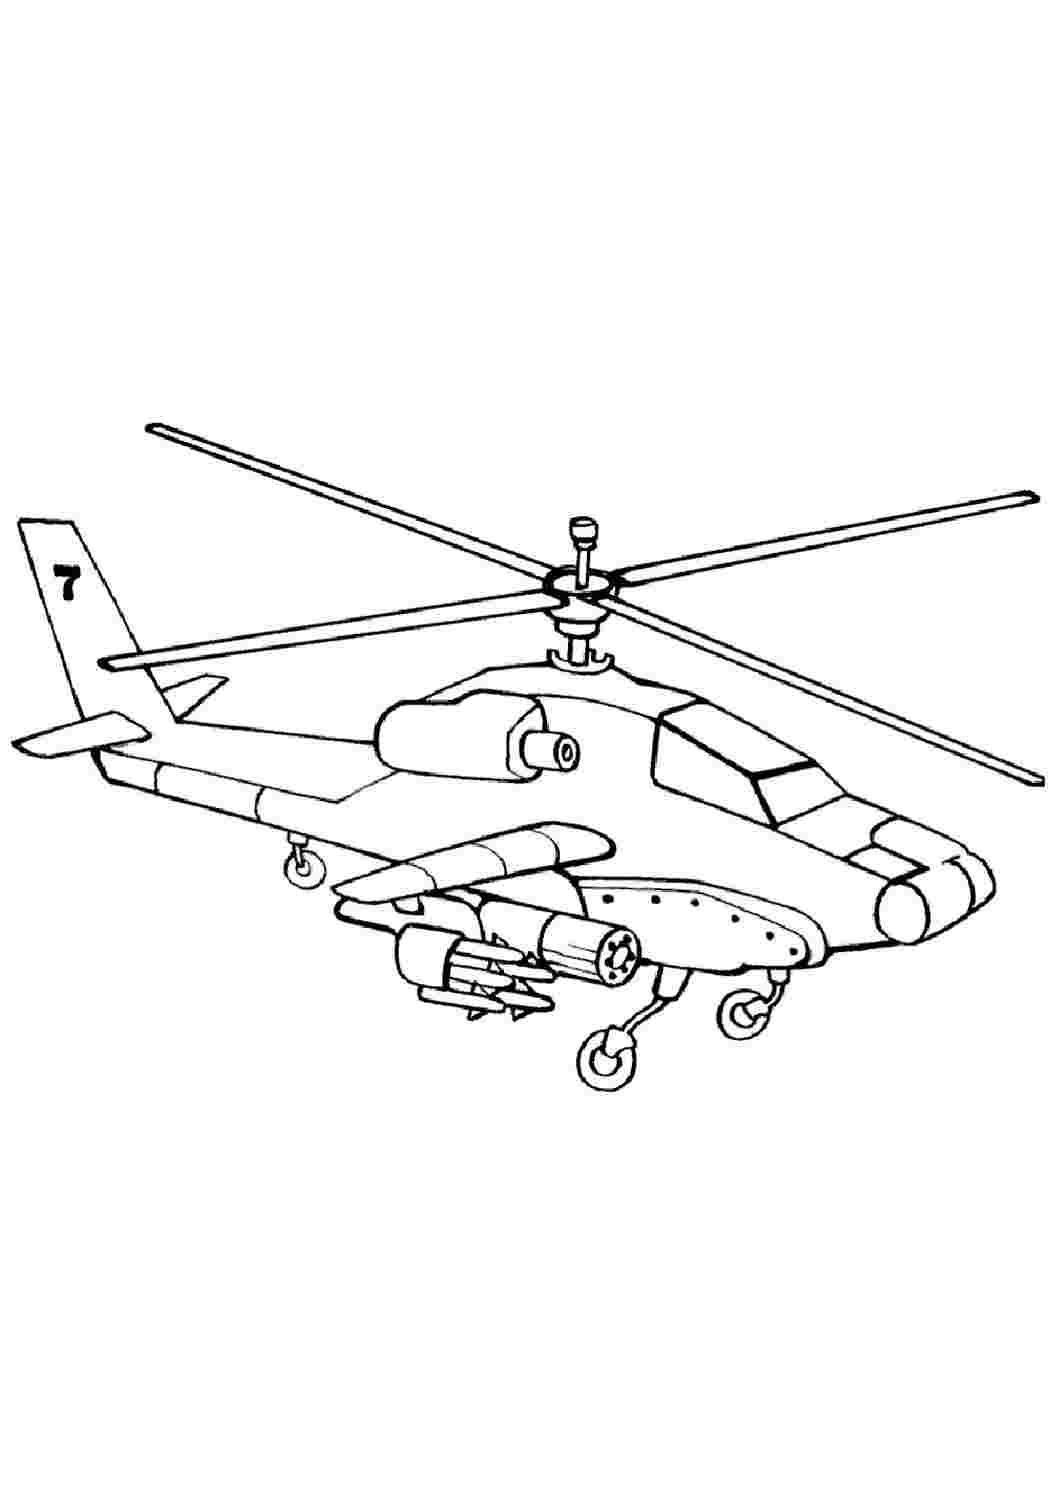 Раскраска военный вертолет ка-52